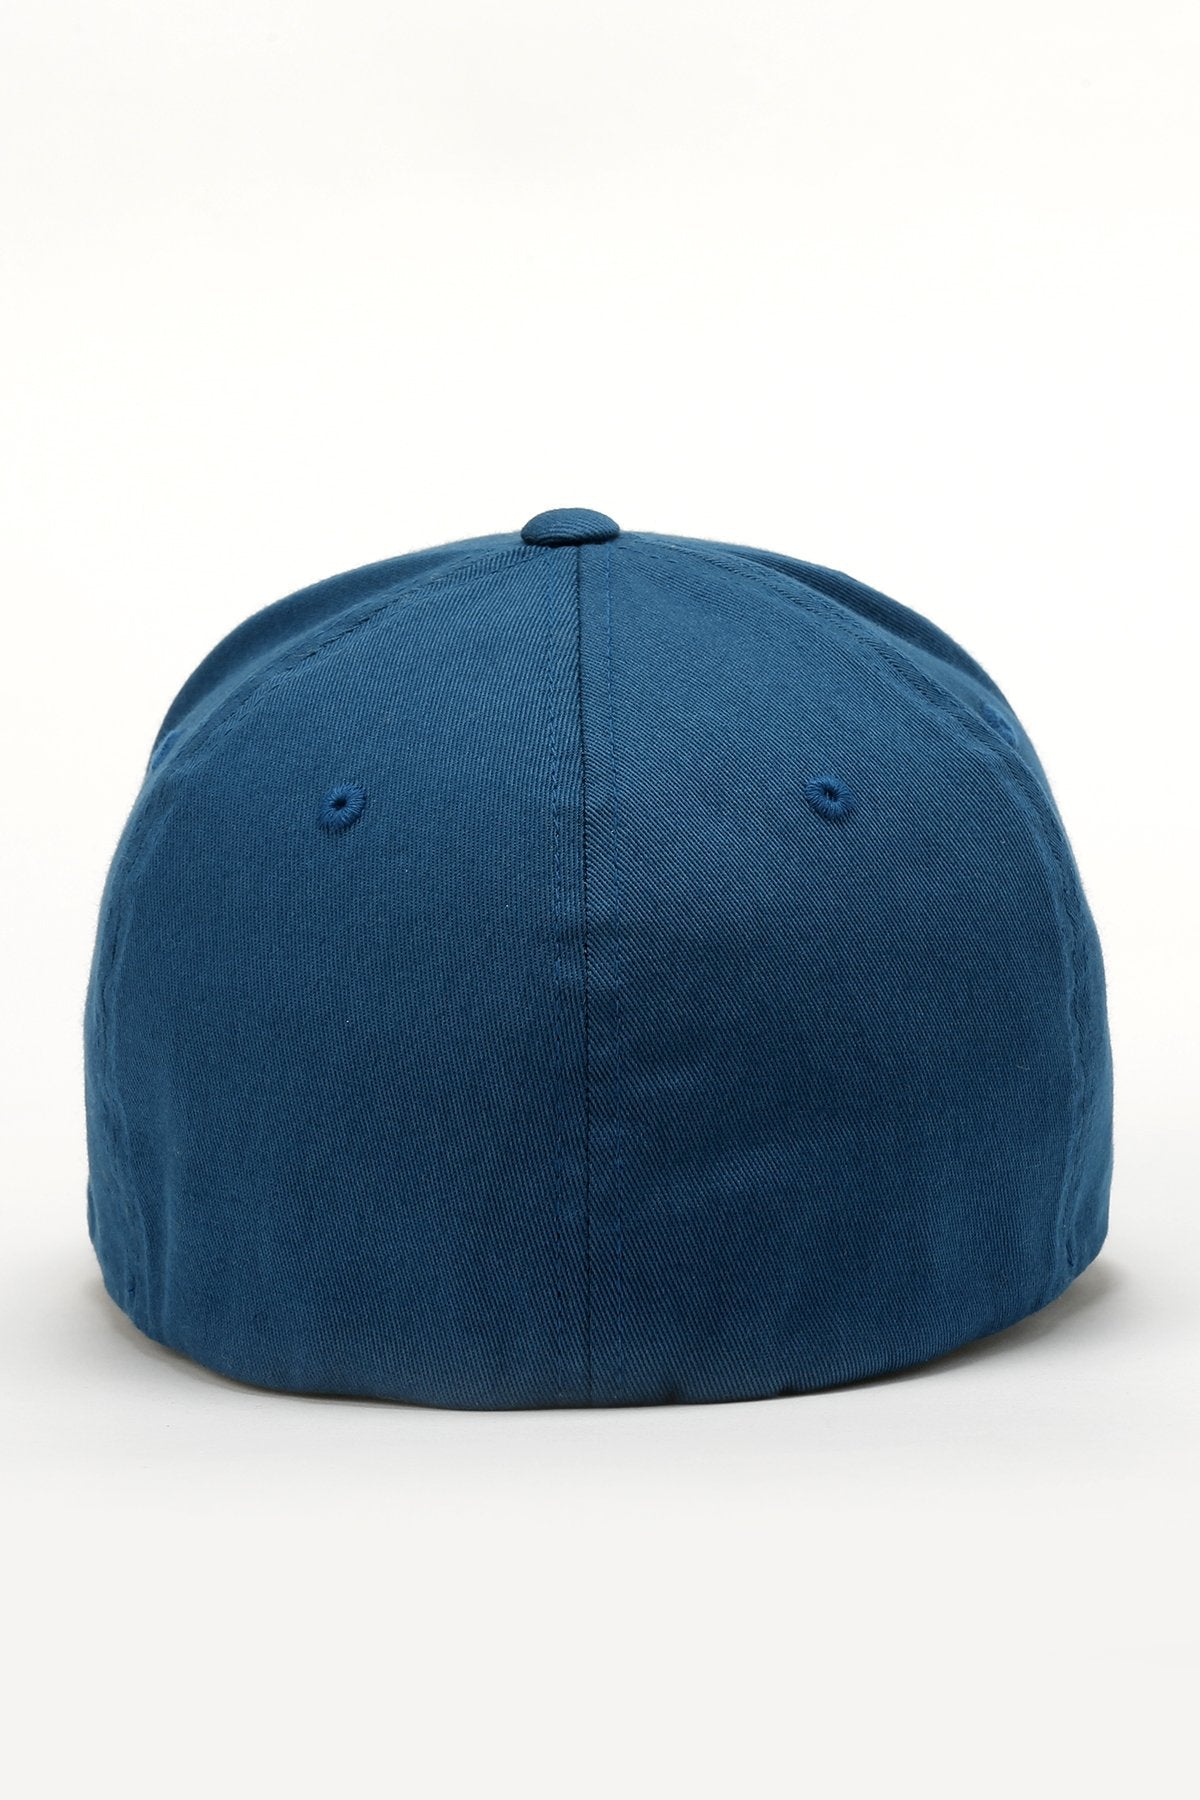 Cinch Mens Baseball Cap - Blue - MCC0627780